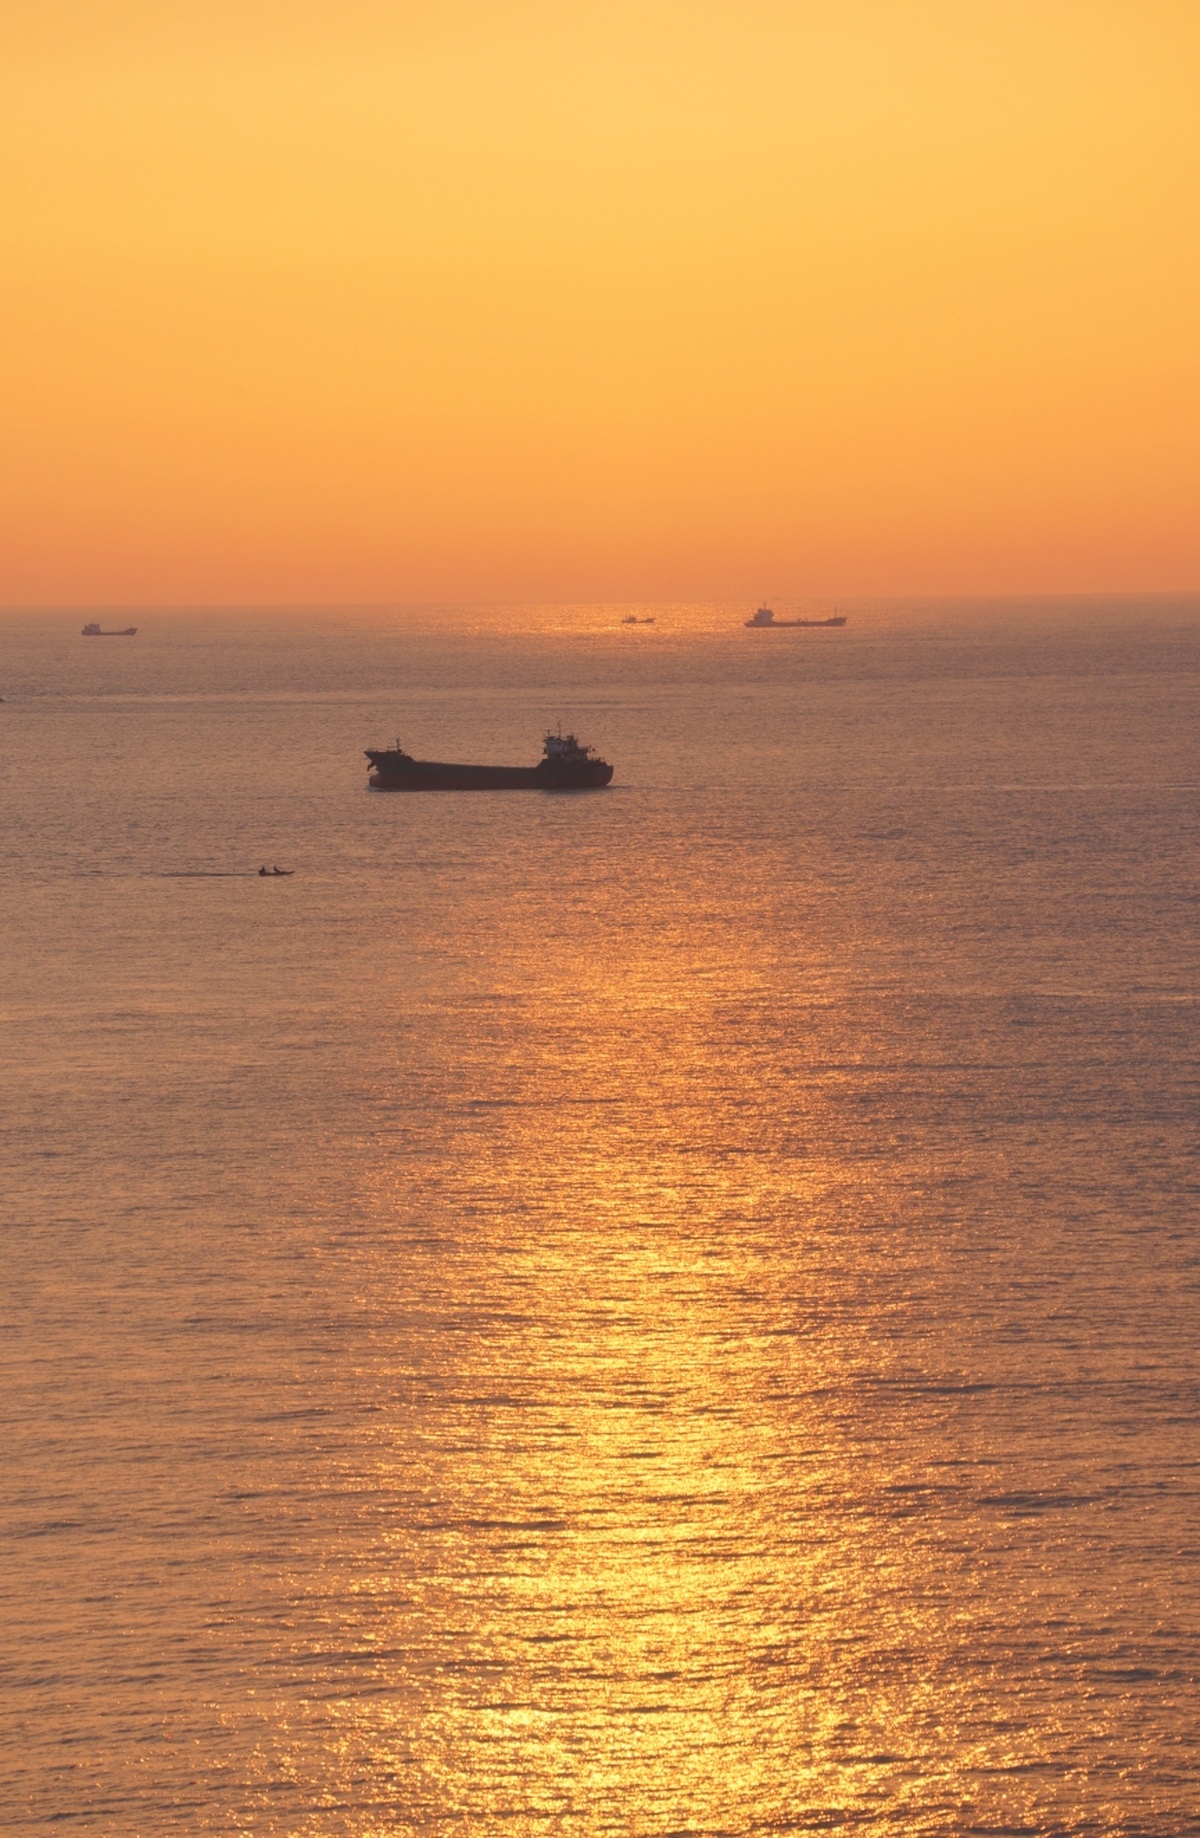 夕阳下的大型水域 夕阳在地平线上落下 一艘船在水中漂浮。